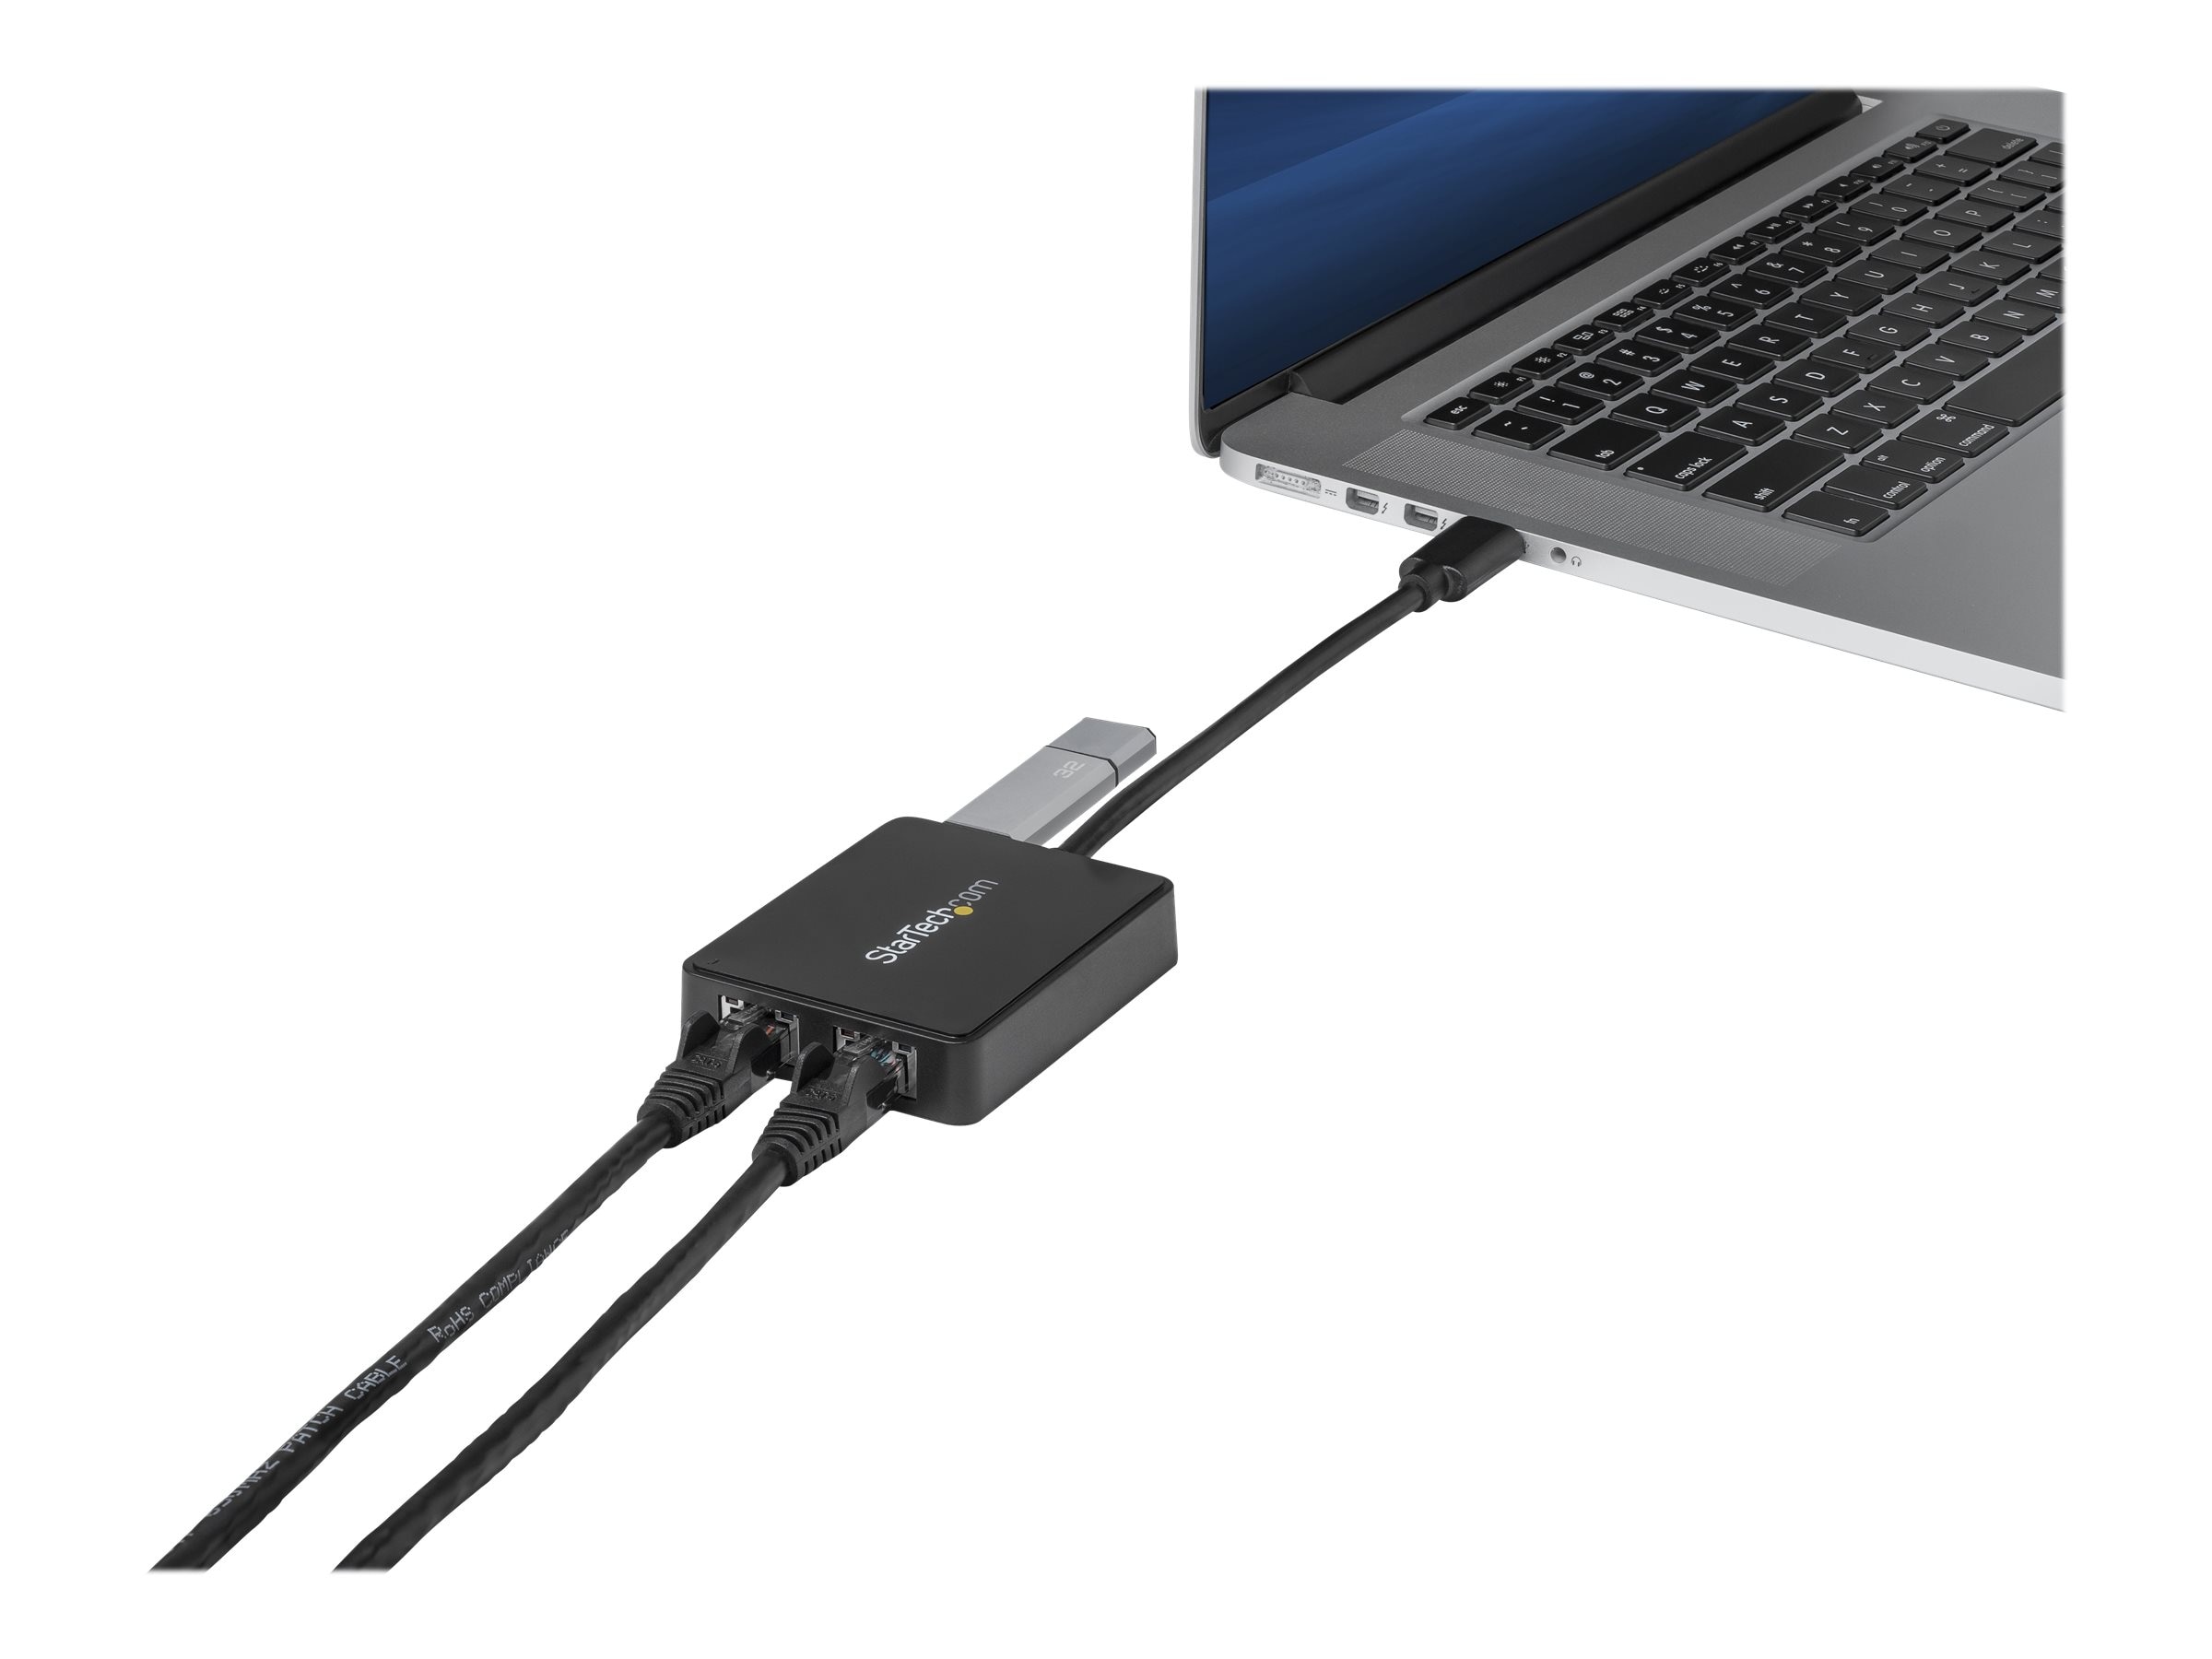 StarTech.com Adaptador USB-C 3.0 / Gigabit Ethernet (H/M) - Negro